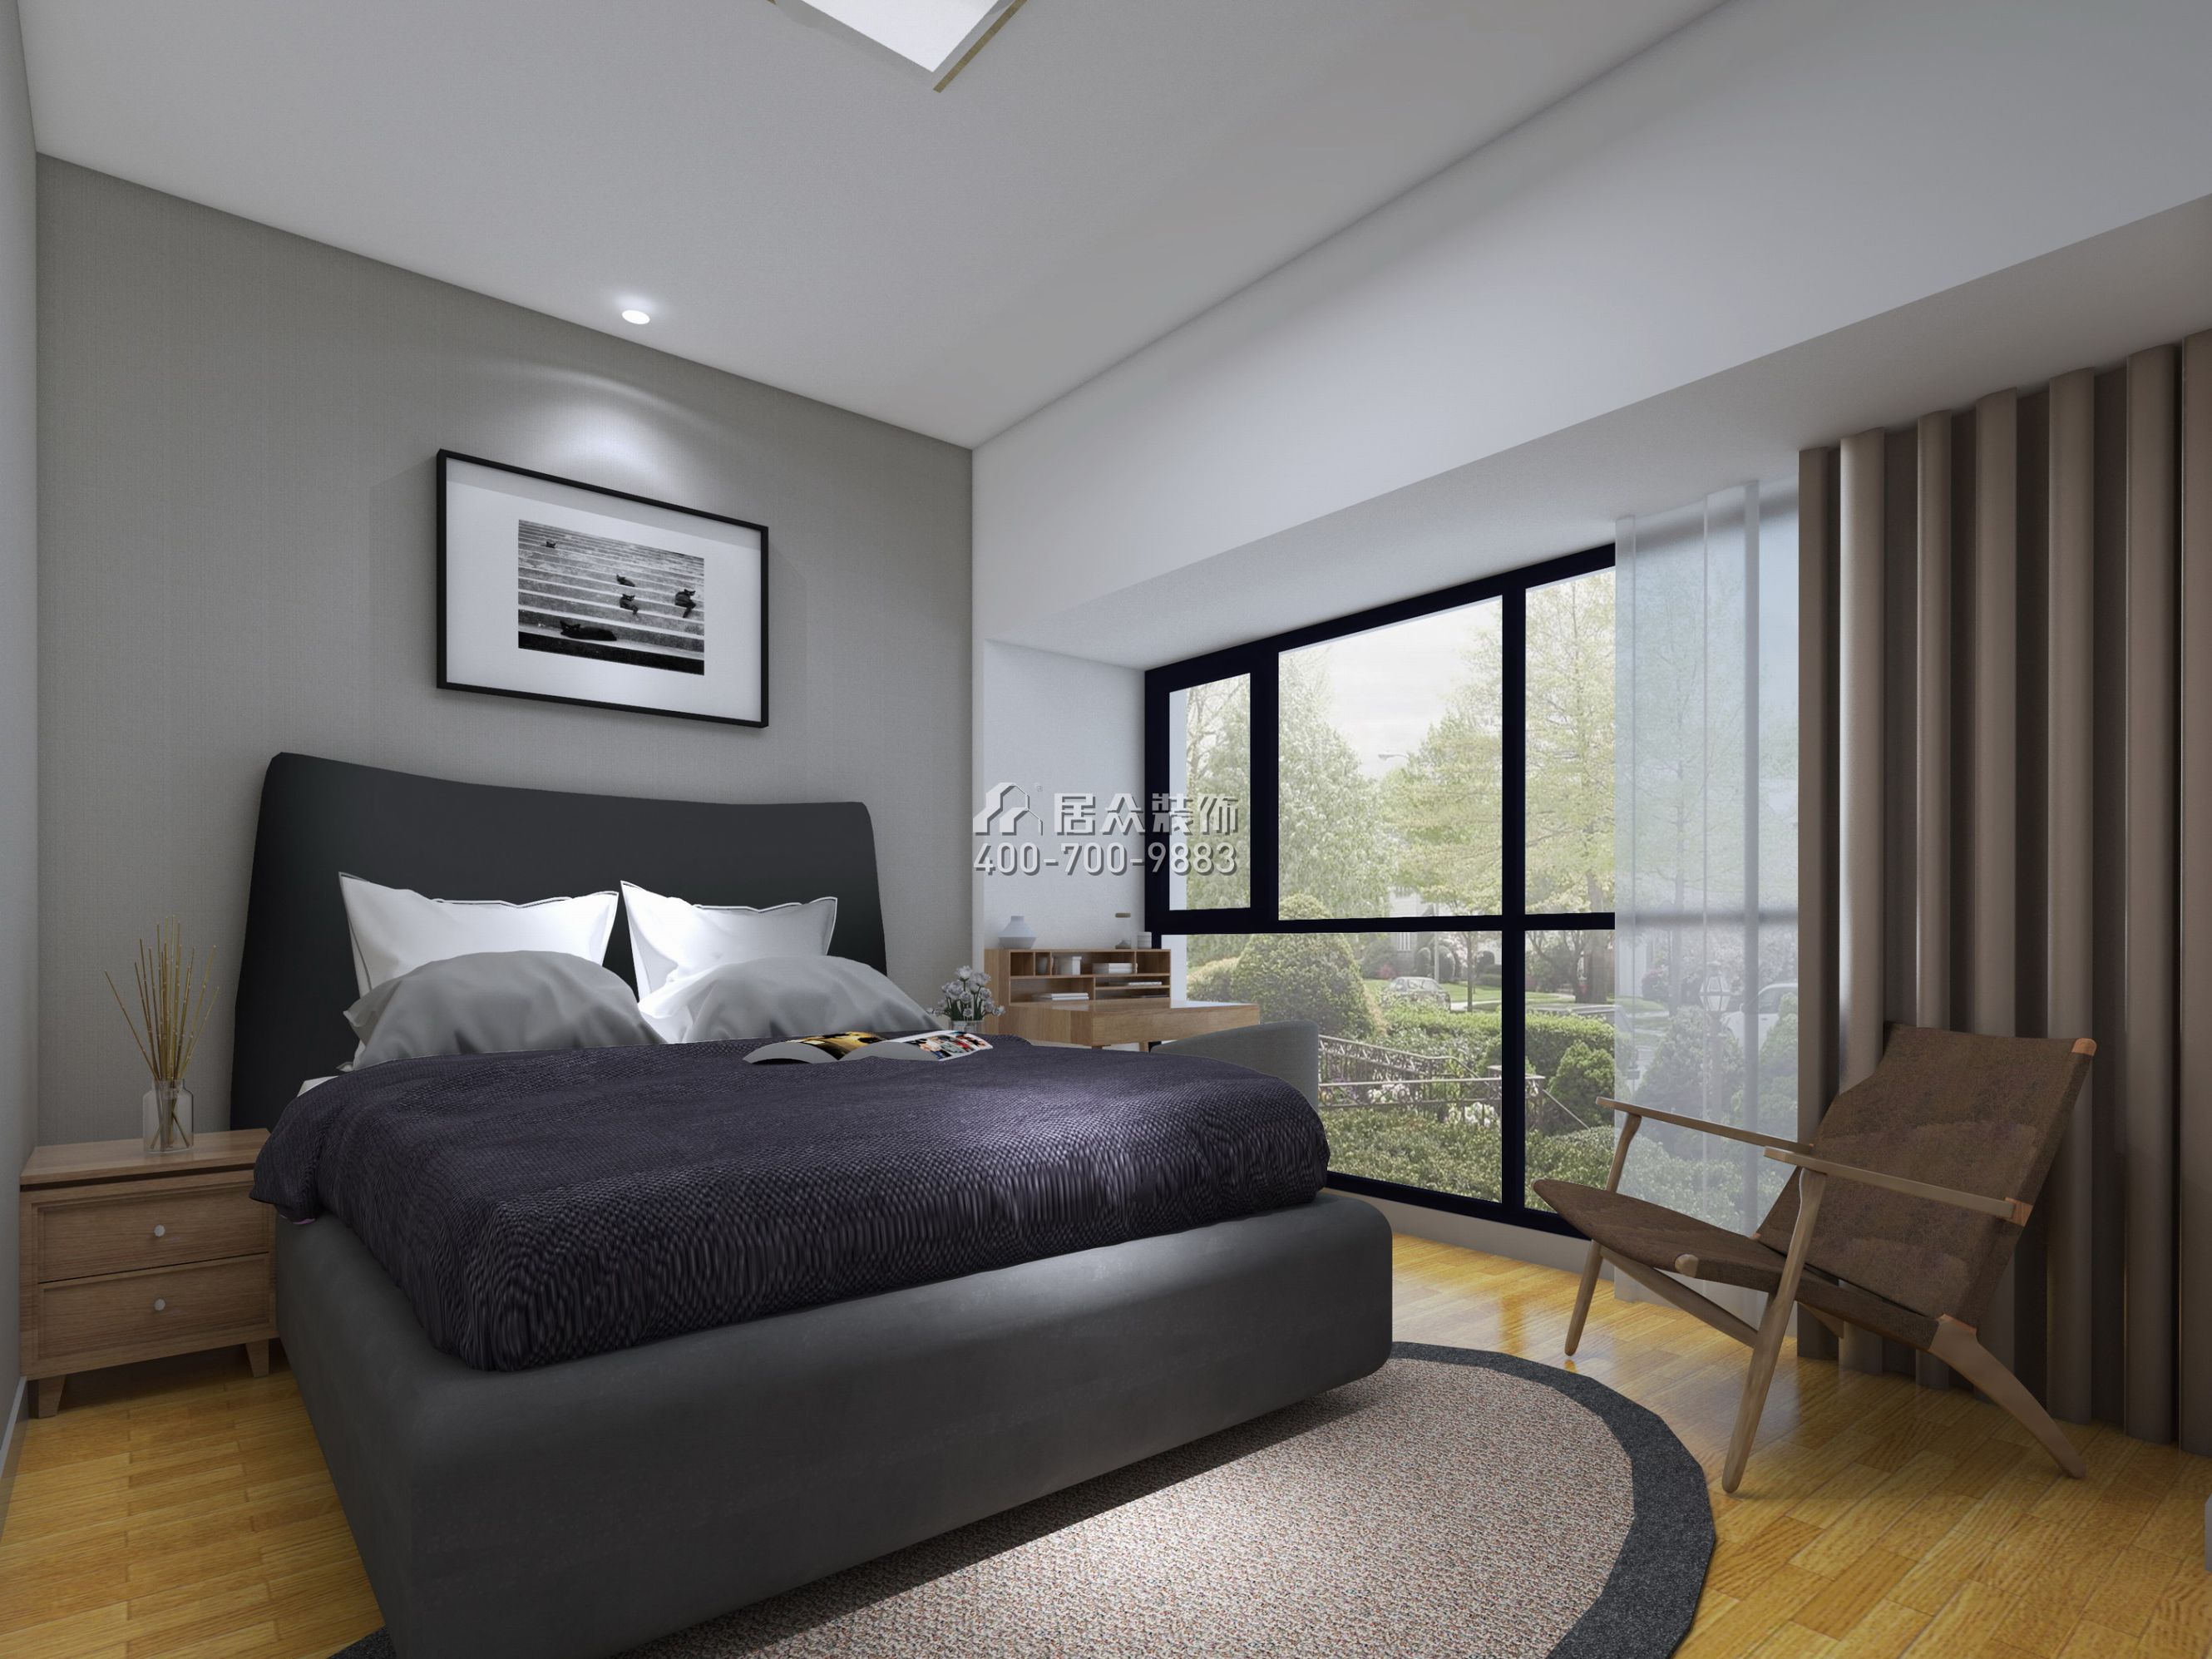 桑泰丹华园135平方米现代简约风格平层户型卧室装修效果图